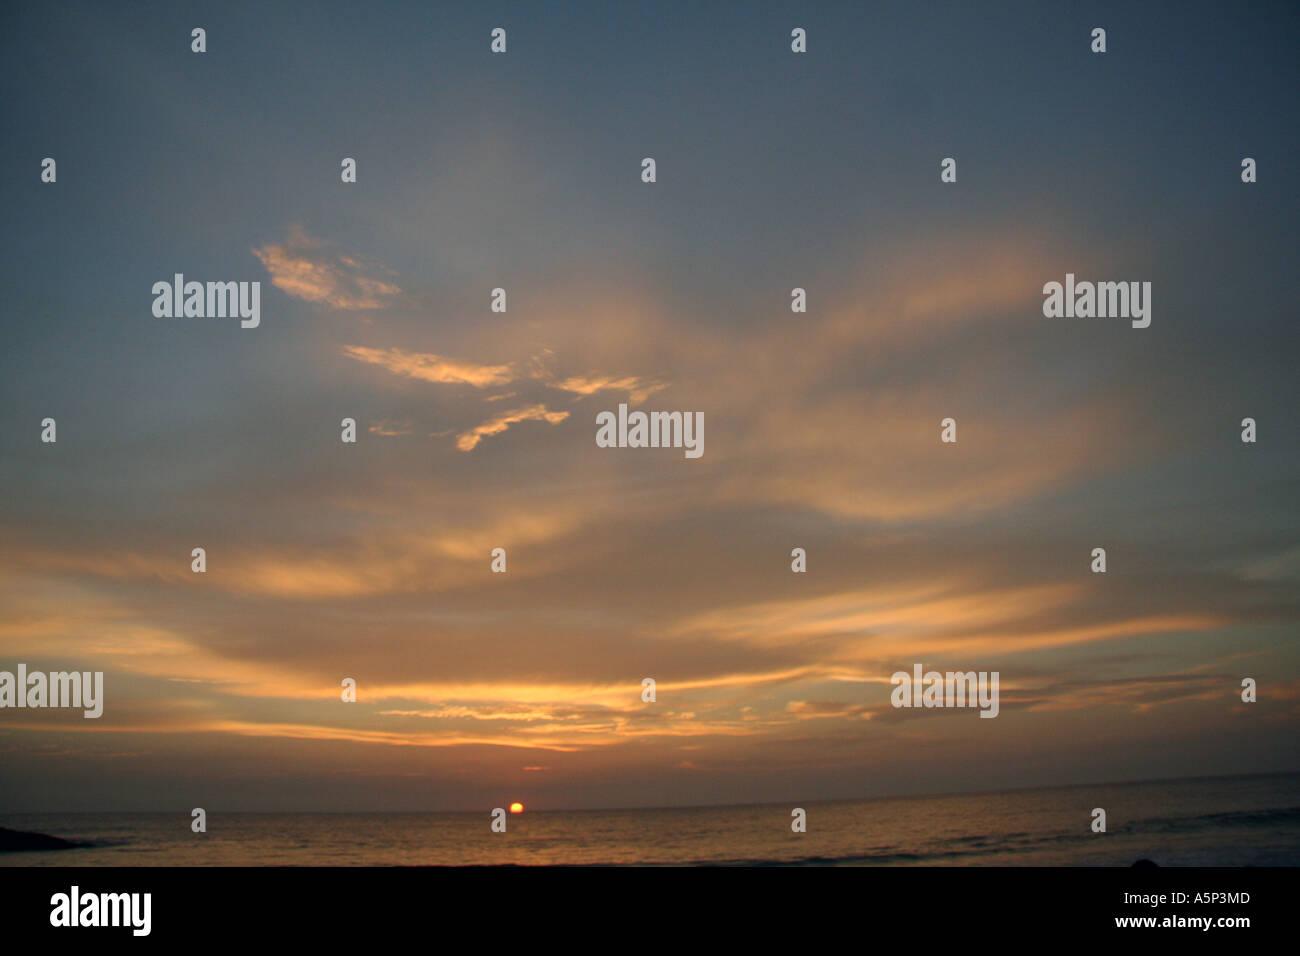 Stunning indian skyline at sunset Stock Photo